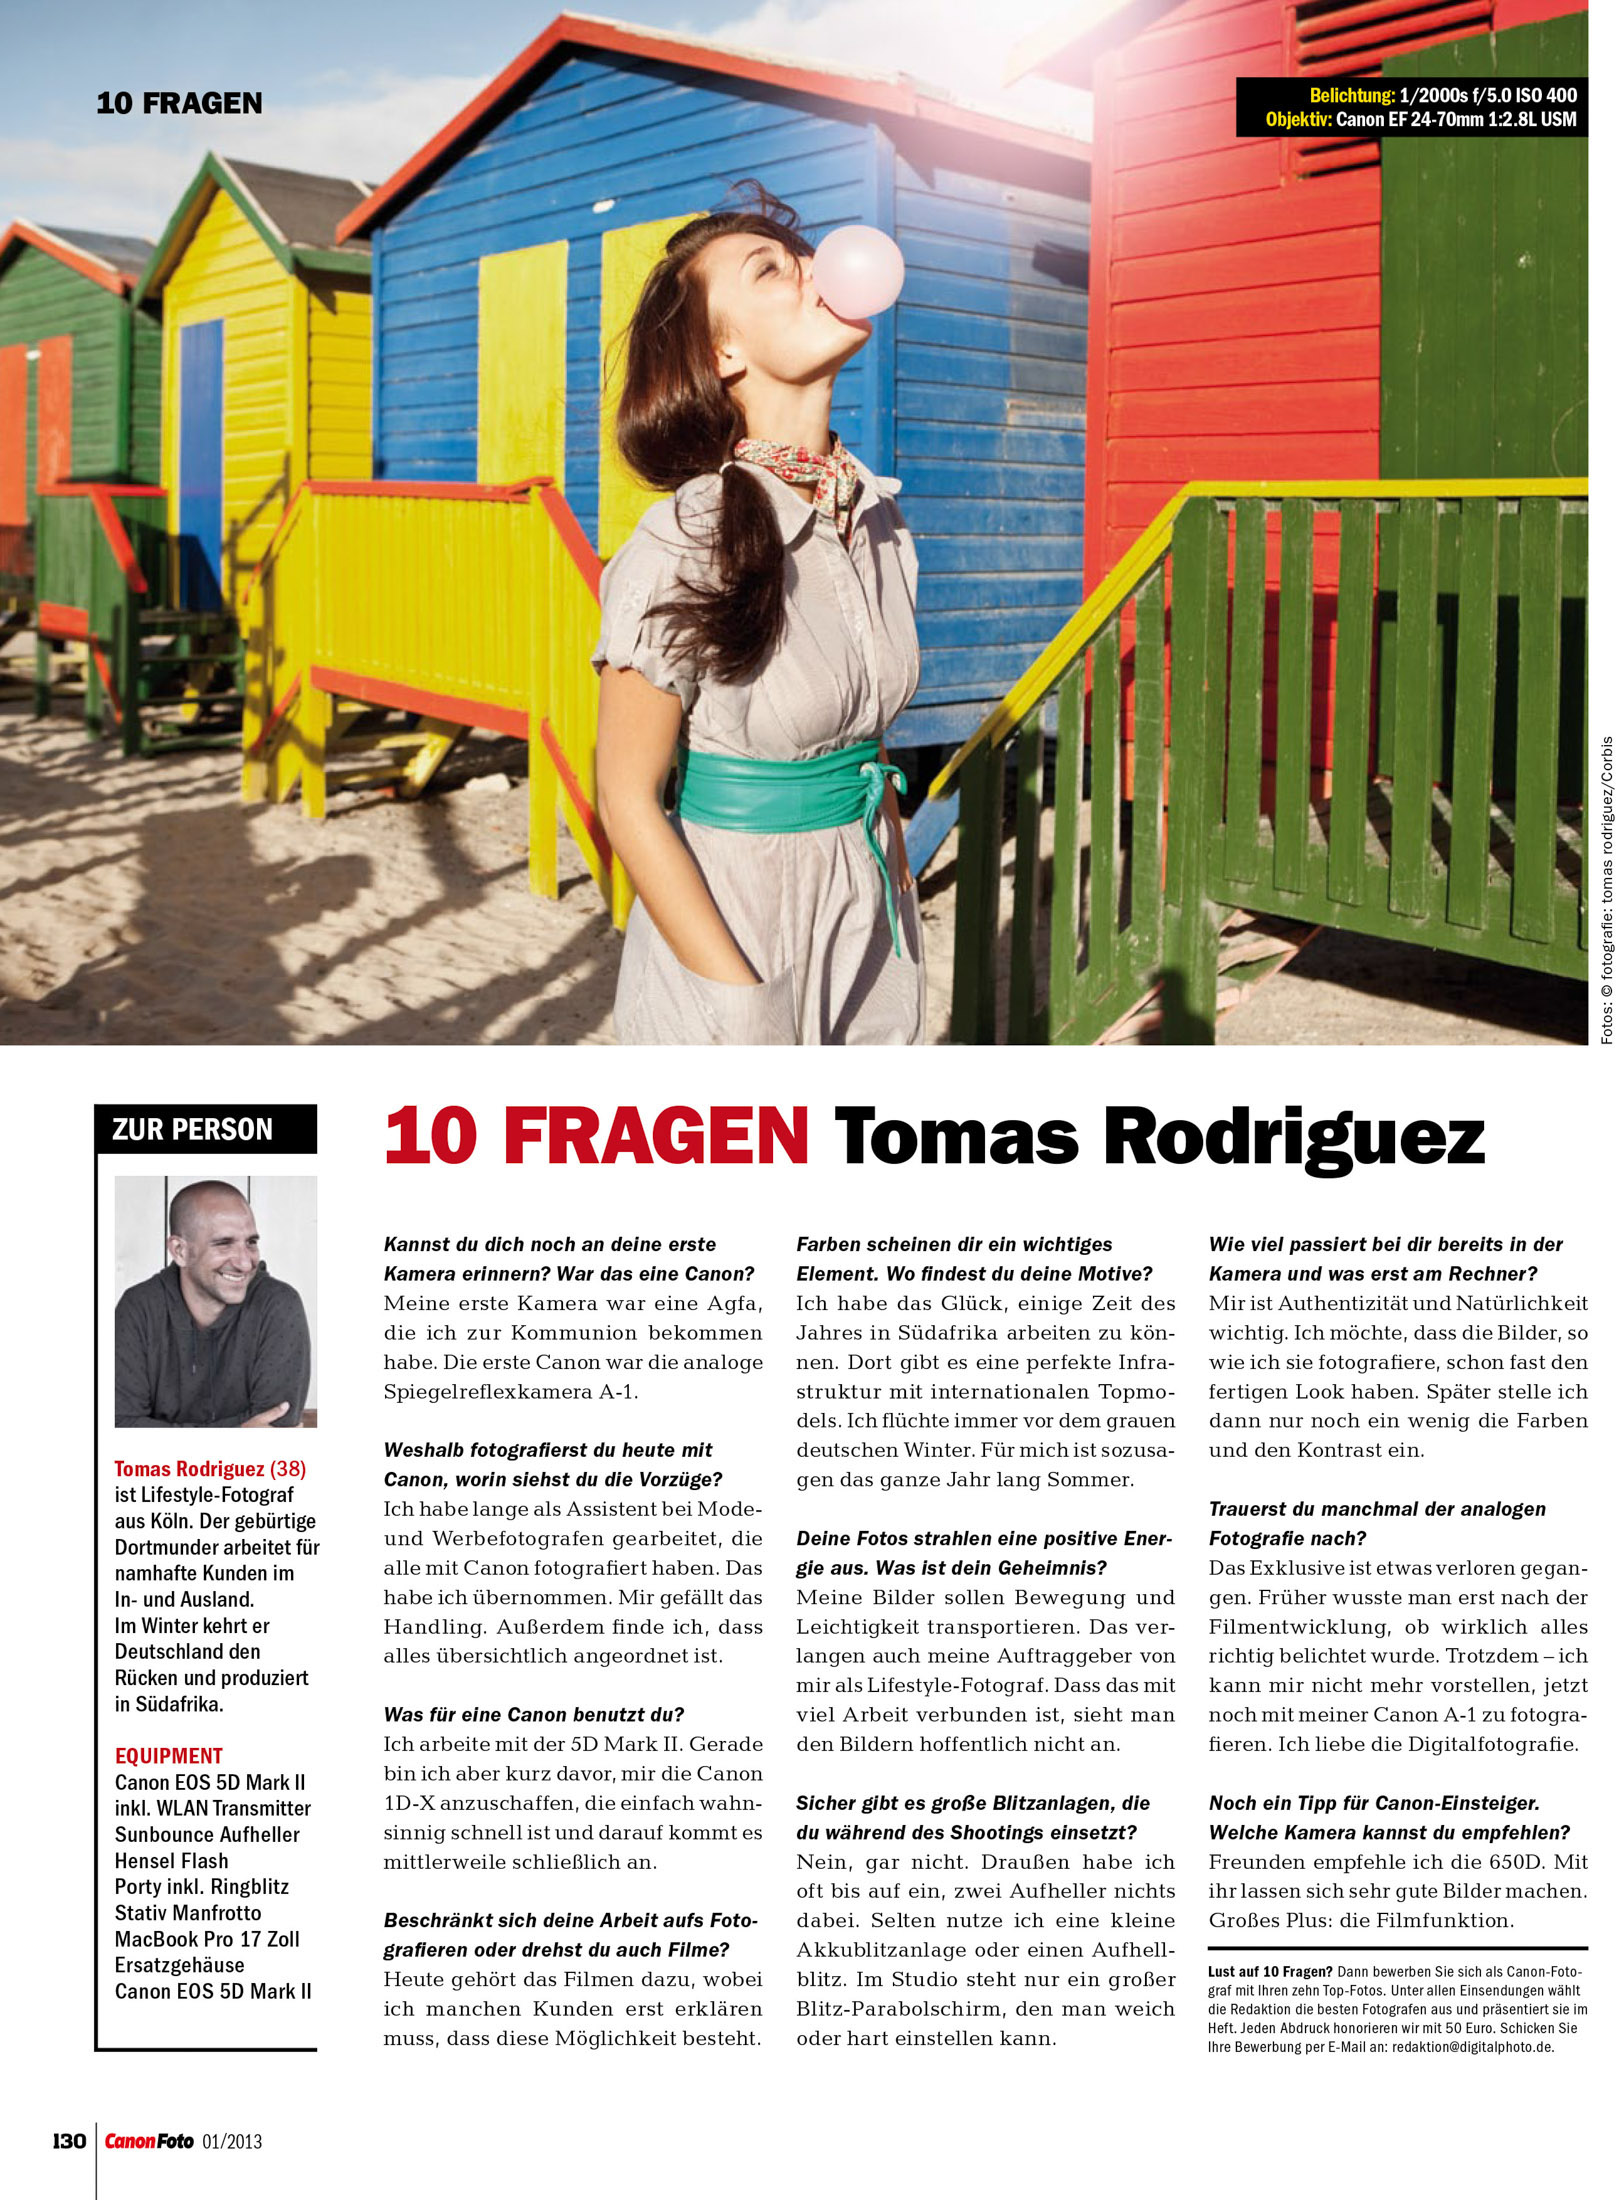 10 Fragen mit Tomas Rodriguez DIGIT